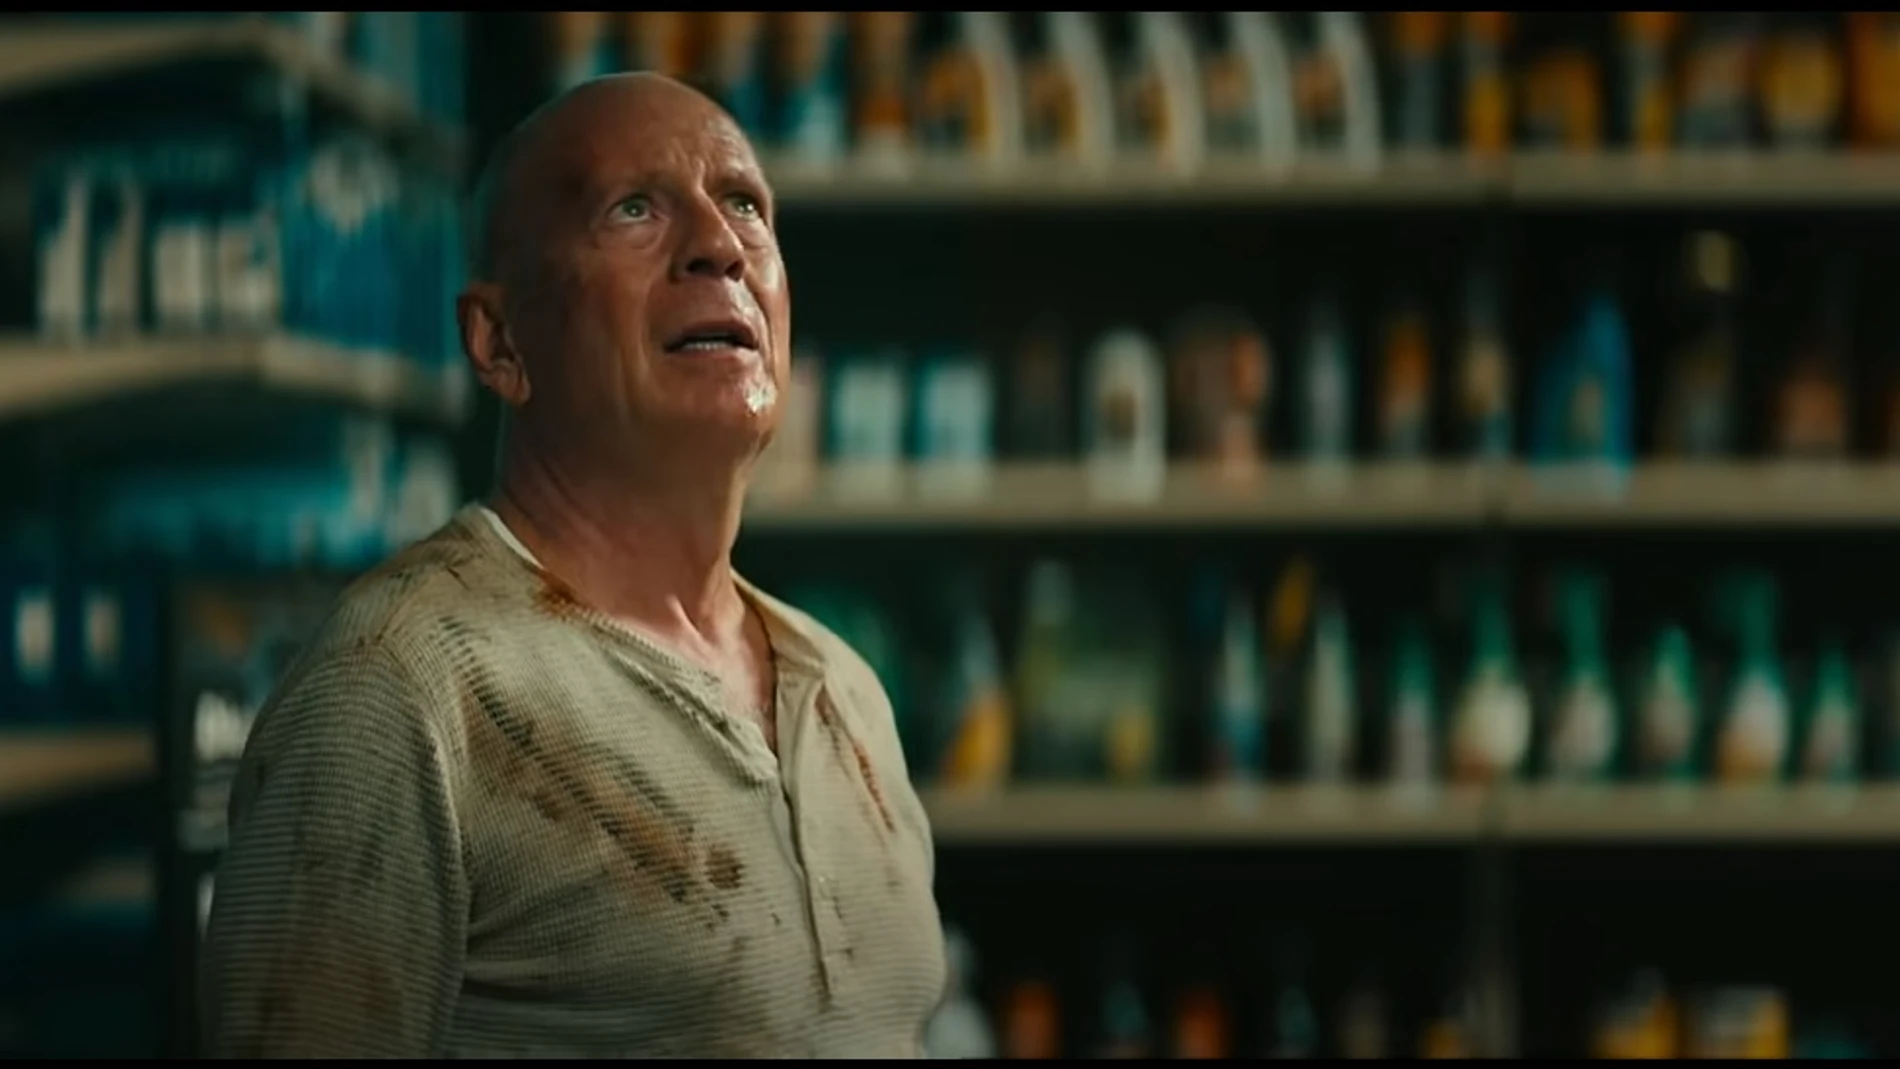 Mirada de sufridor y camiseta interior no tan blanca y llena de quemaduras, rasguños y sangre; sin duda es John McClane